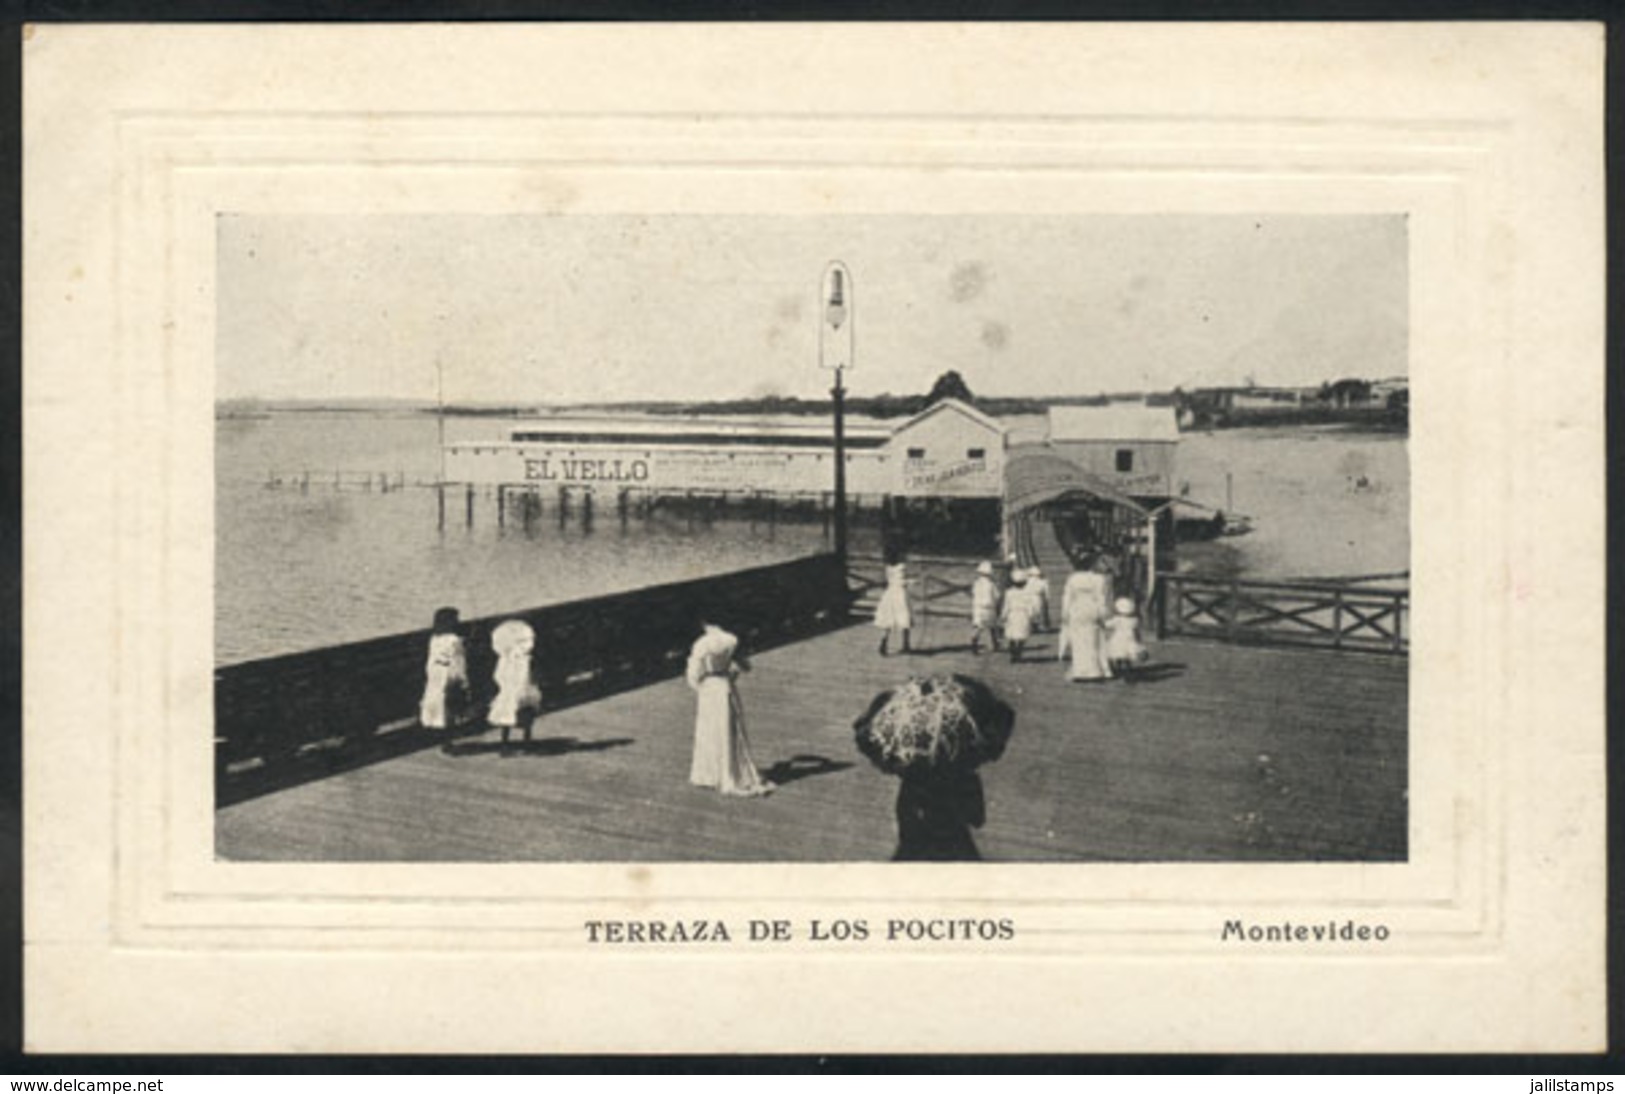 URUGUAY: Montevideo: Terraza De Los Pocitos, Circa 1905, Excellent Quality! - Uruguay